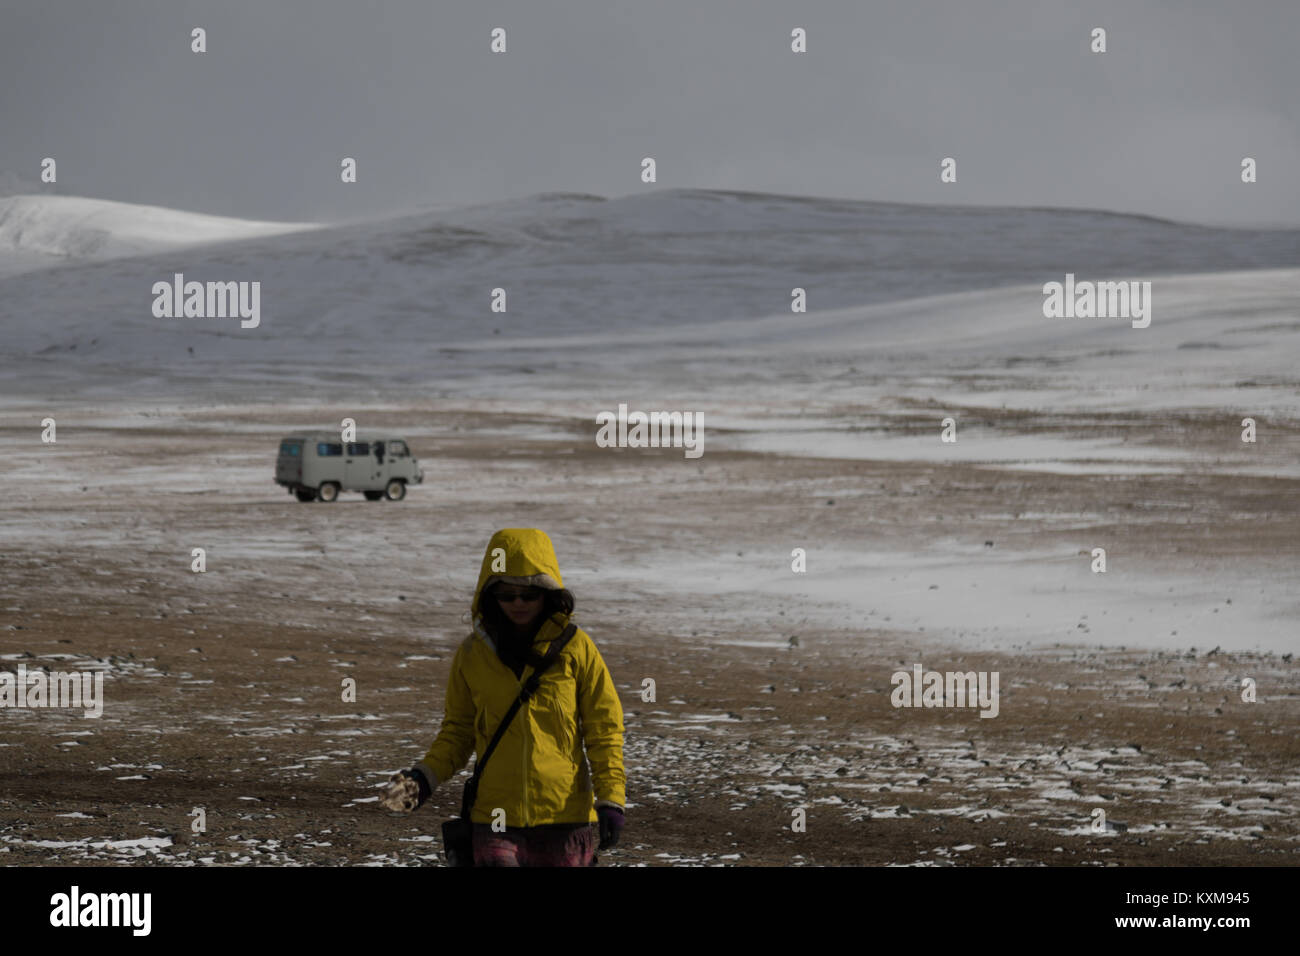 Ragazza donna avventura a piedi campeggio camper van russo UAZ 452 mongola neve invernale Foto Stock